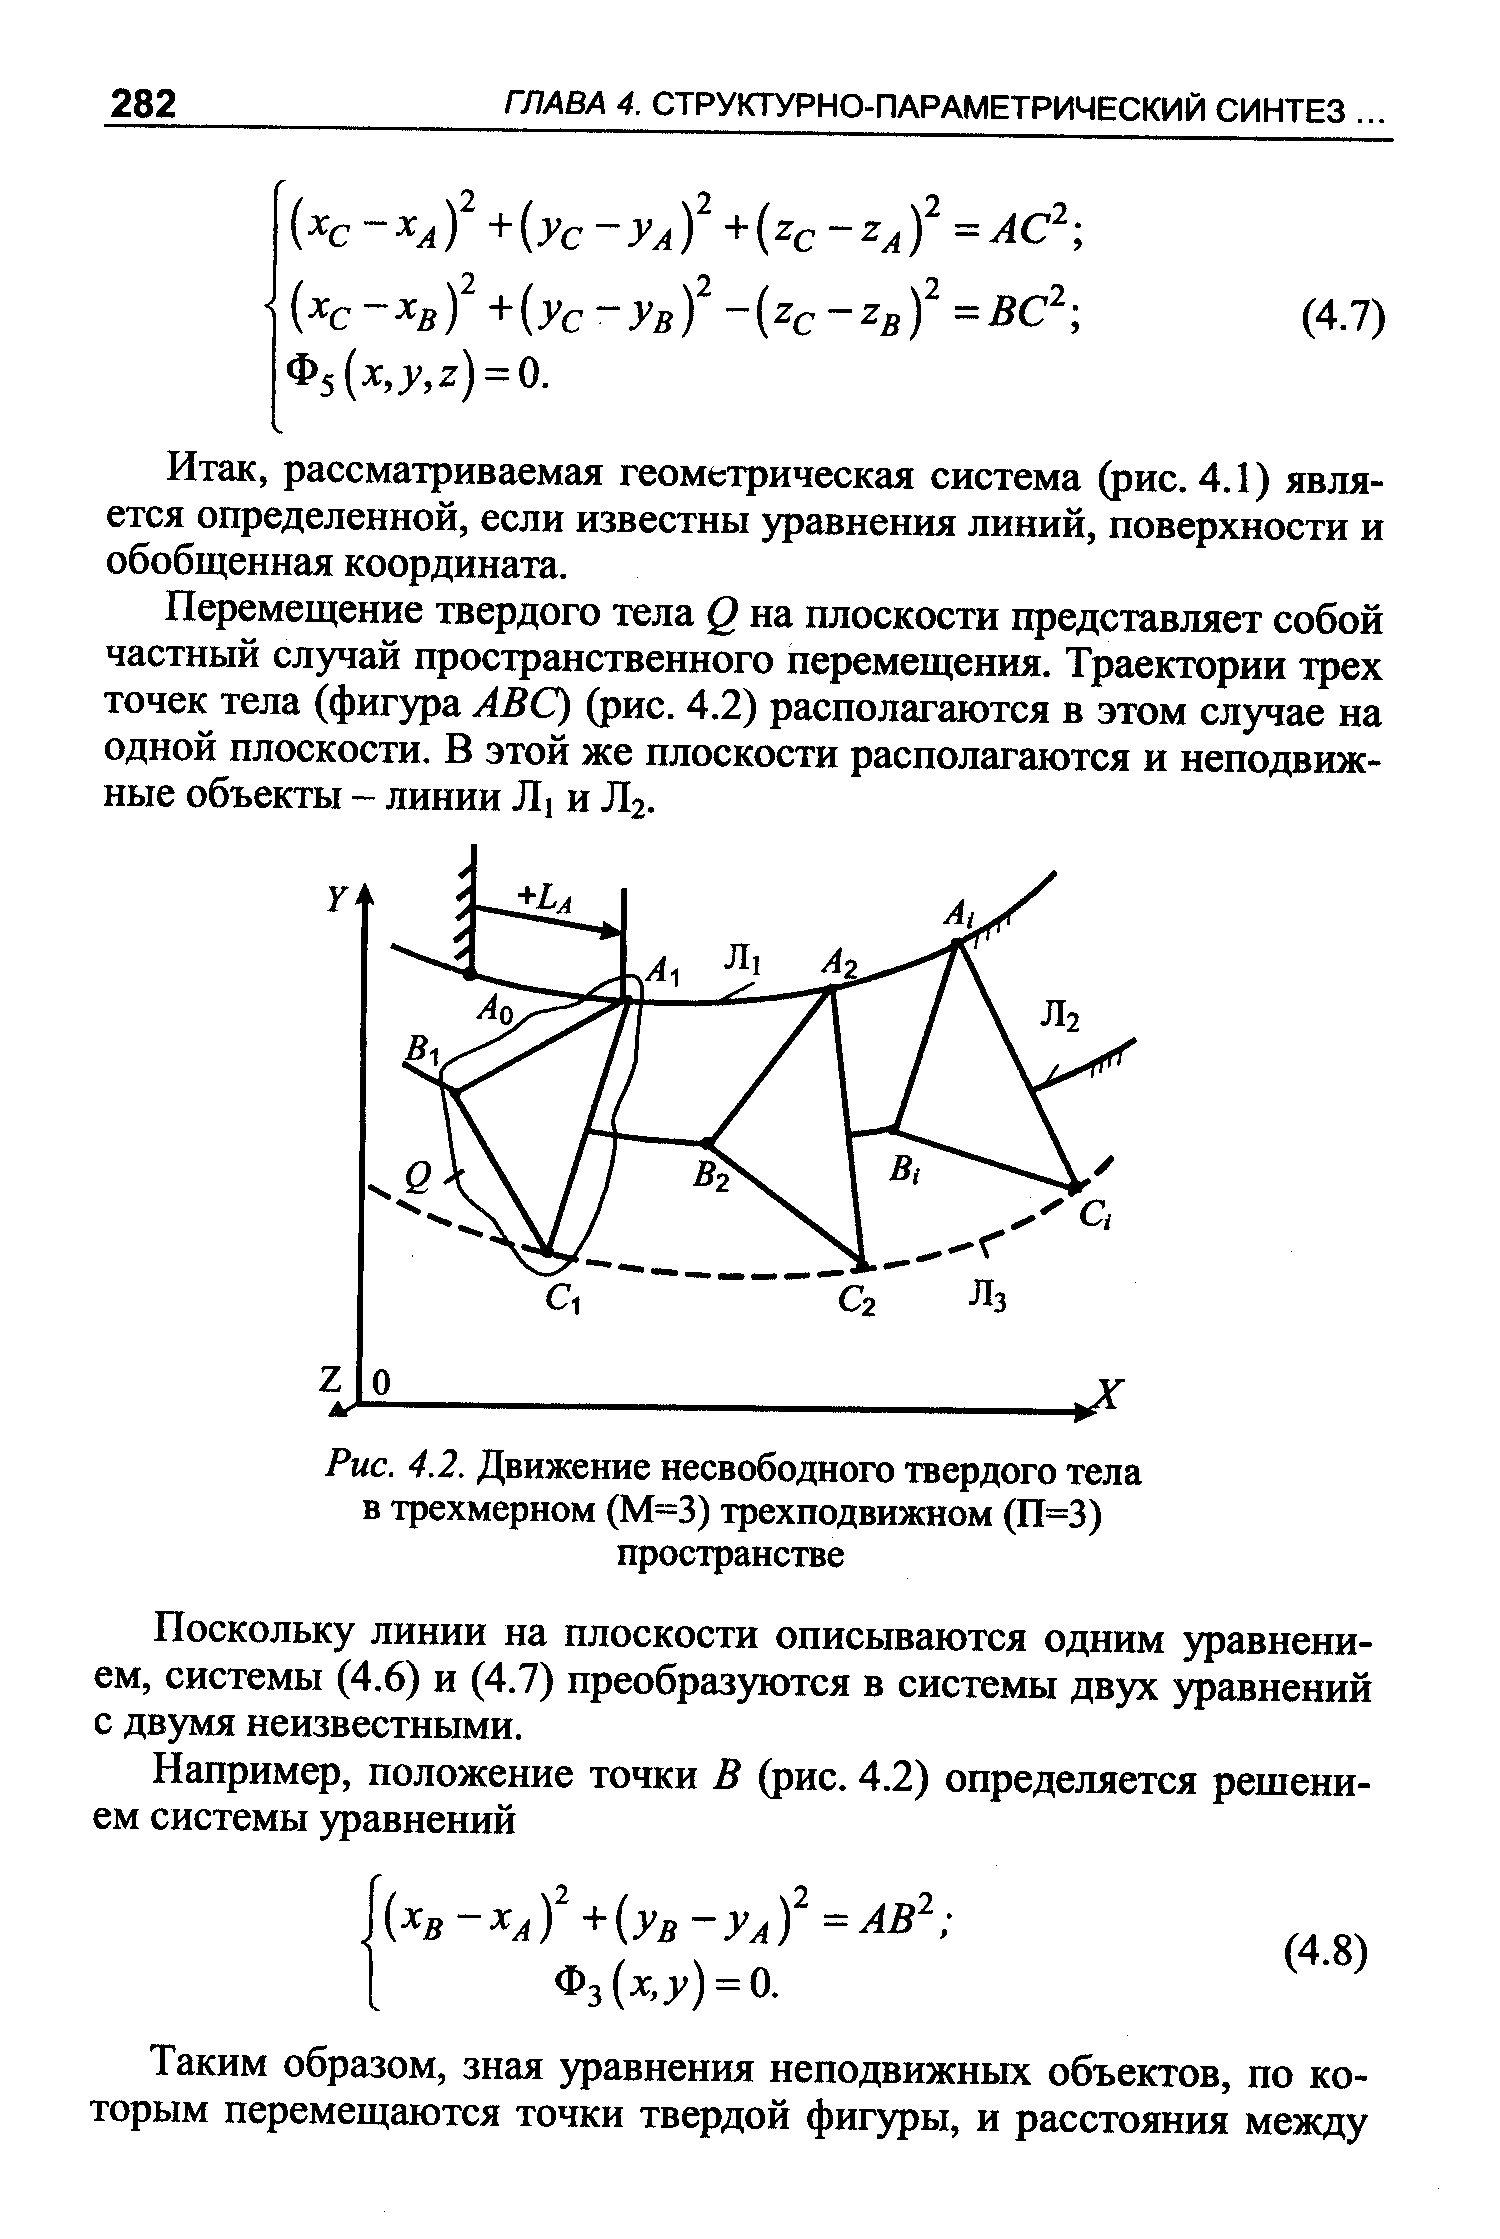 Рис. 4.2. Движение несвободного твердого тела в трехмерном (М=3) трехподвижном (П=3) пространстве
